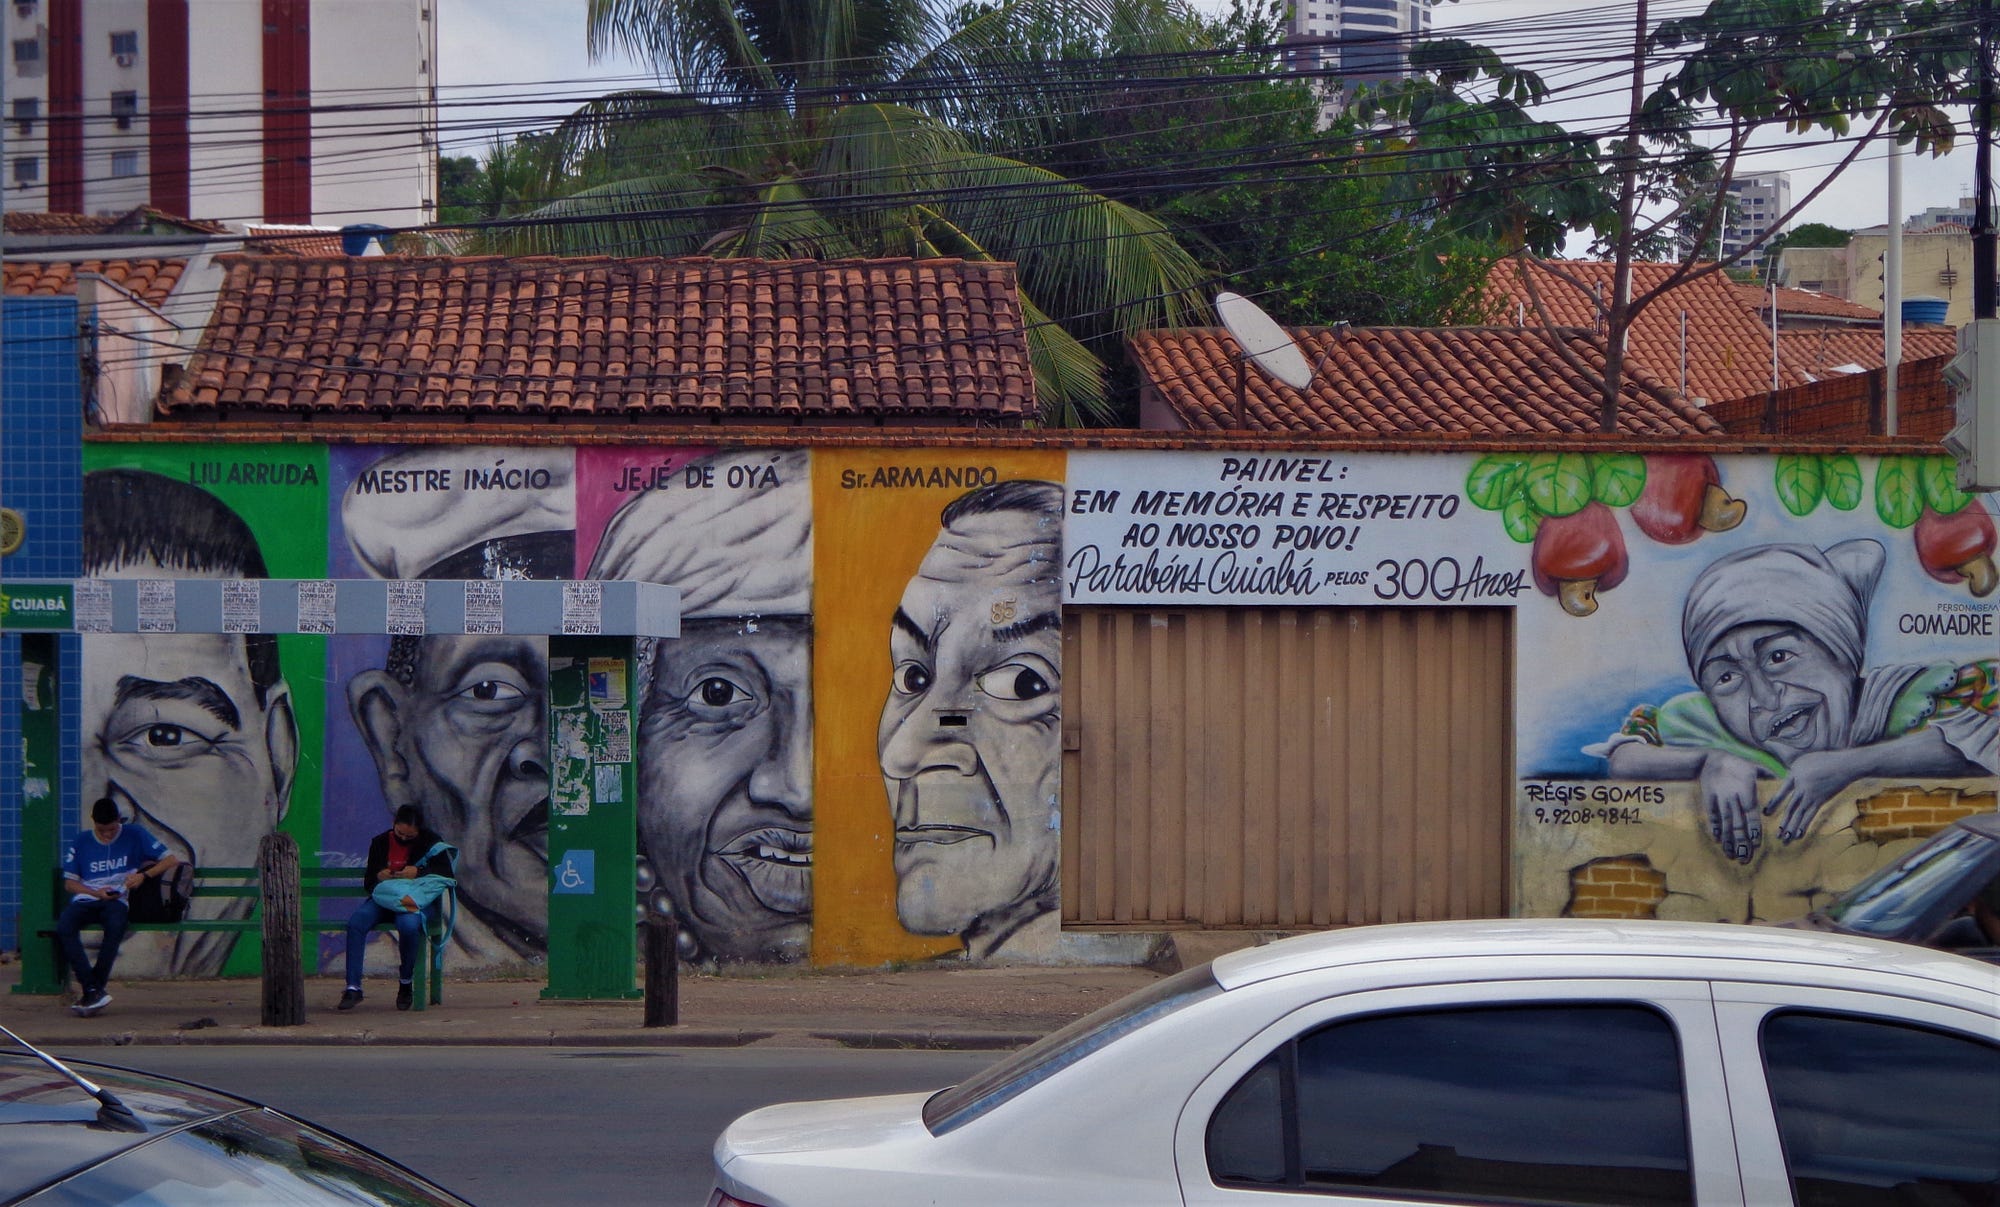 Arte de Régis Gomes com figuras ilustres da cuiabania.